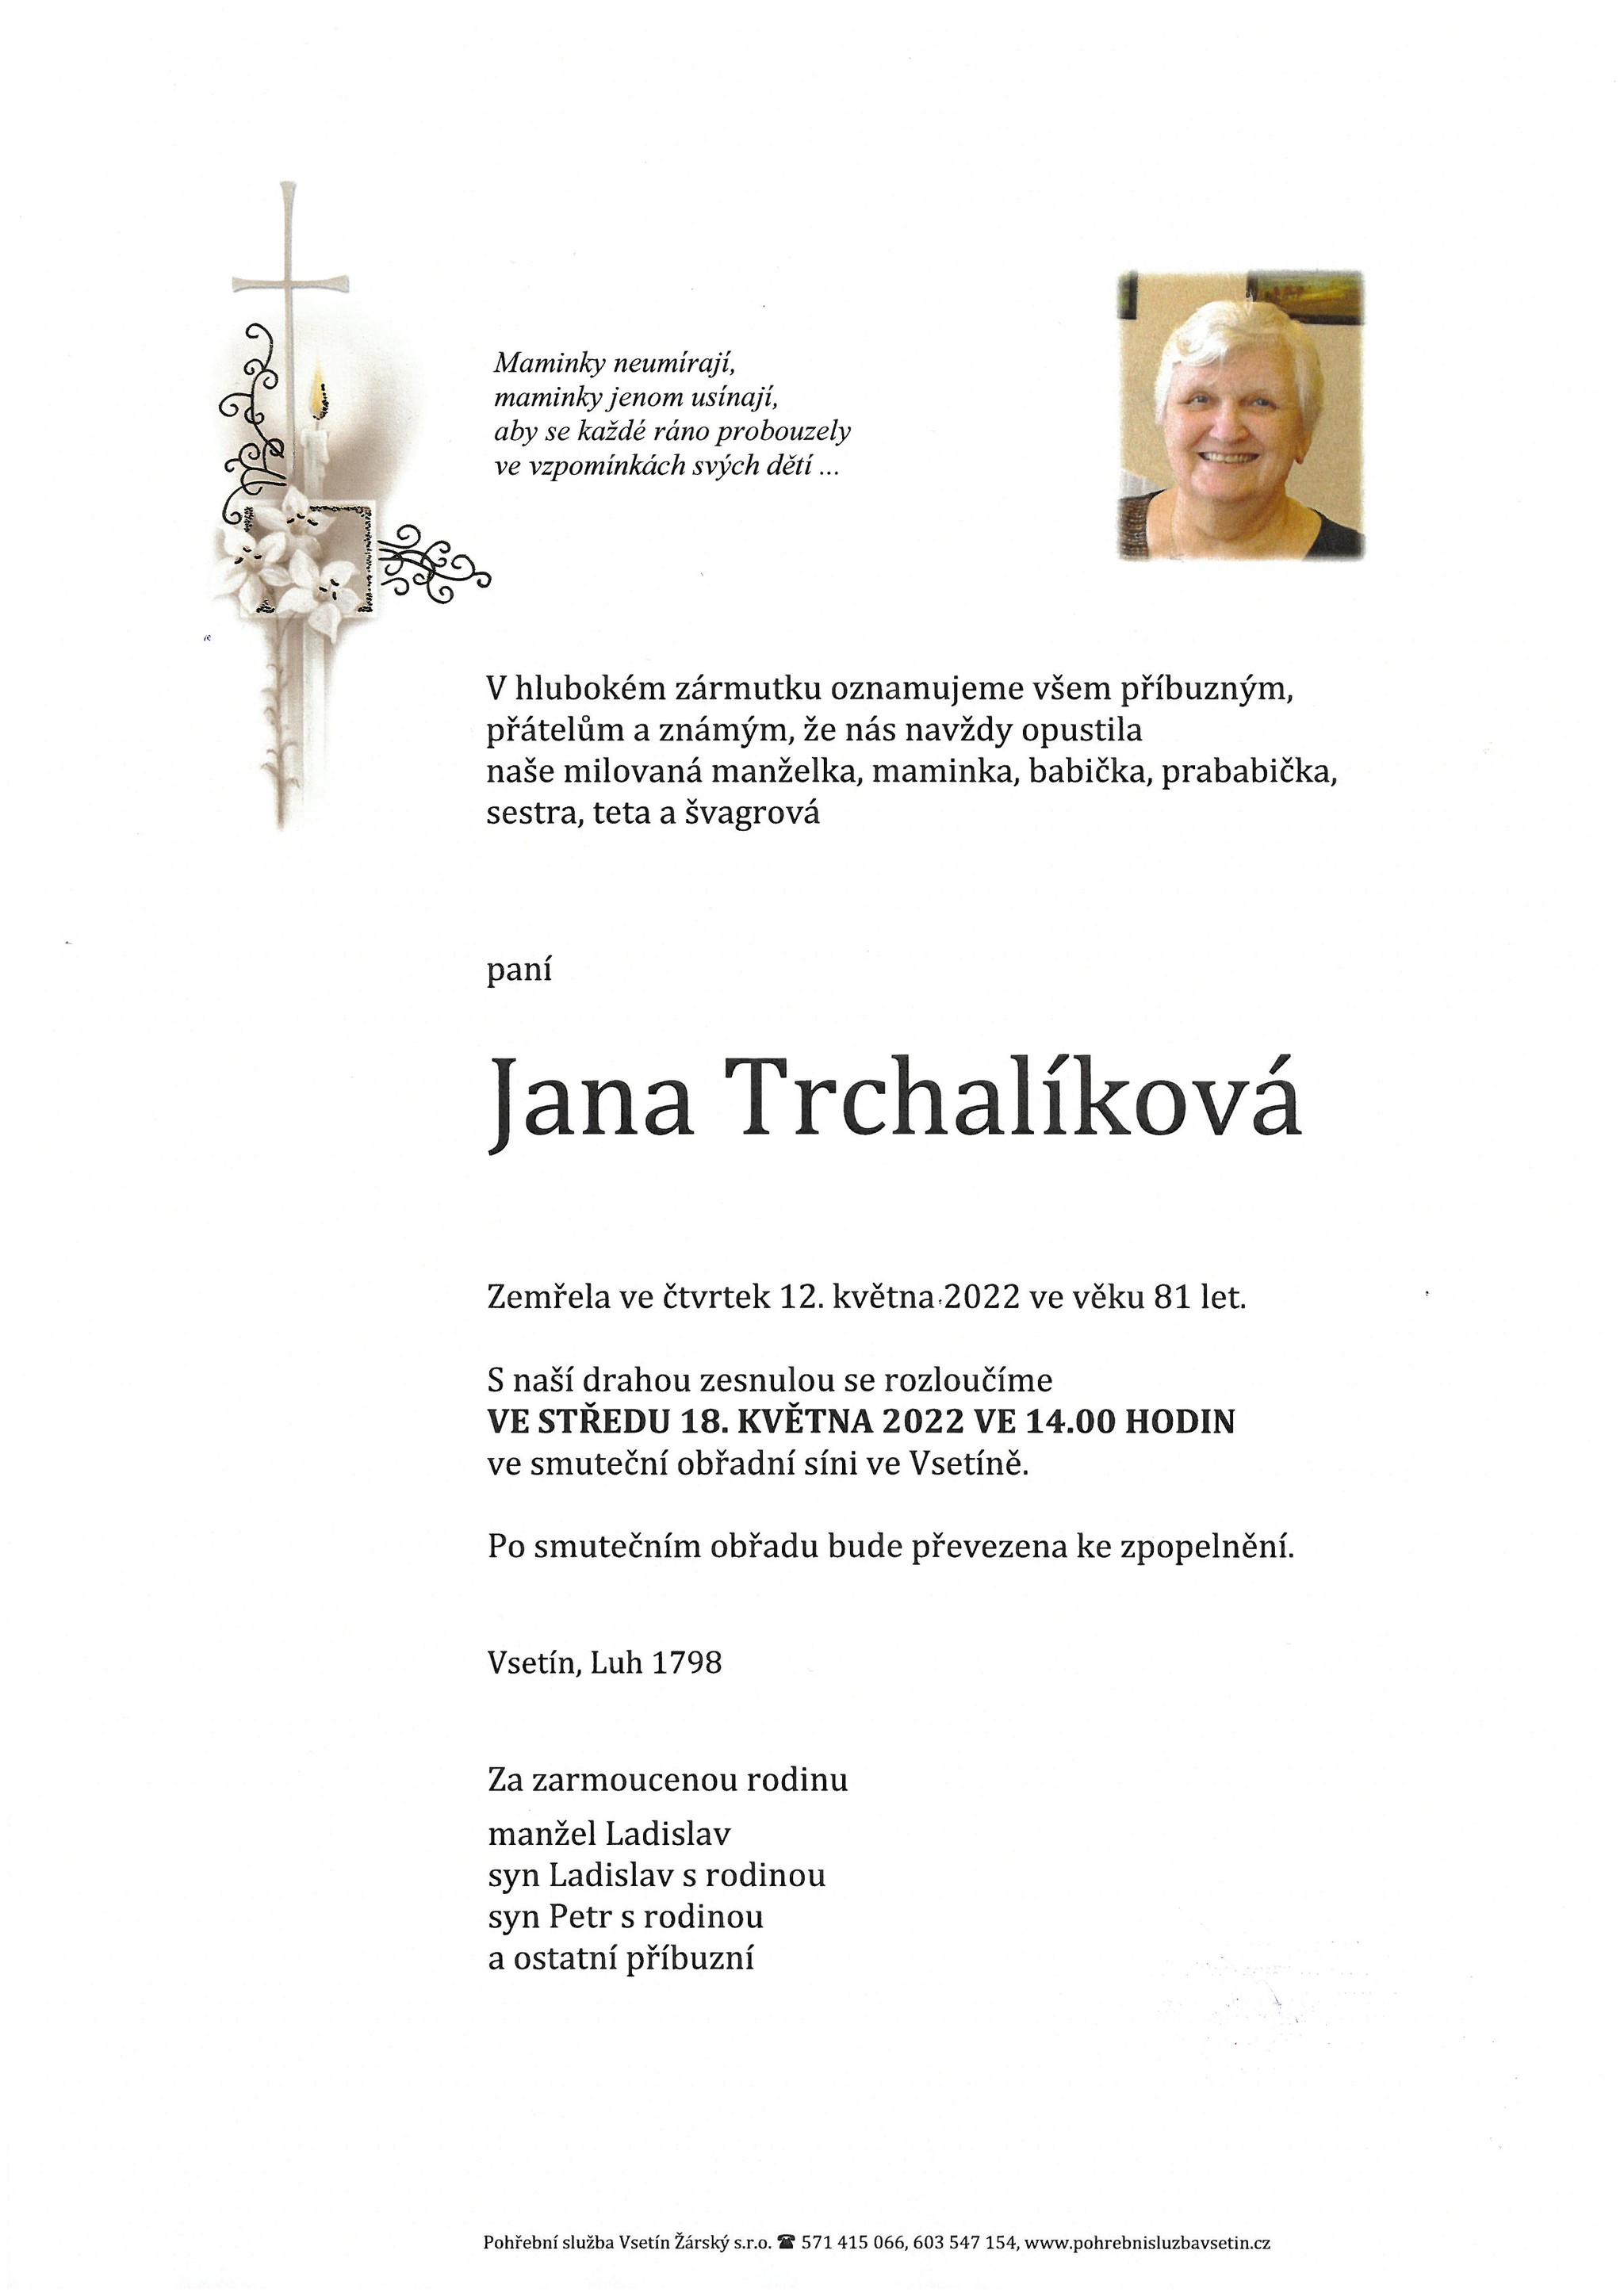 Jana Trchalíková